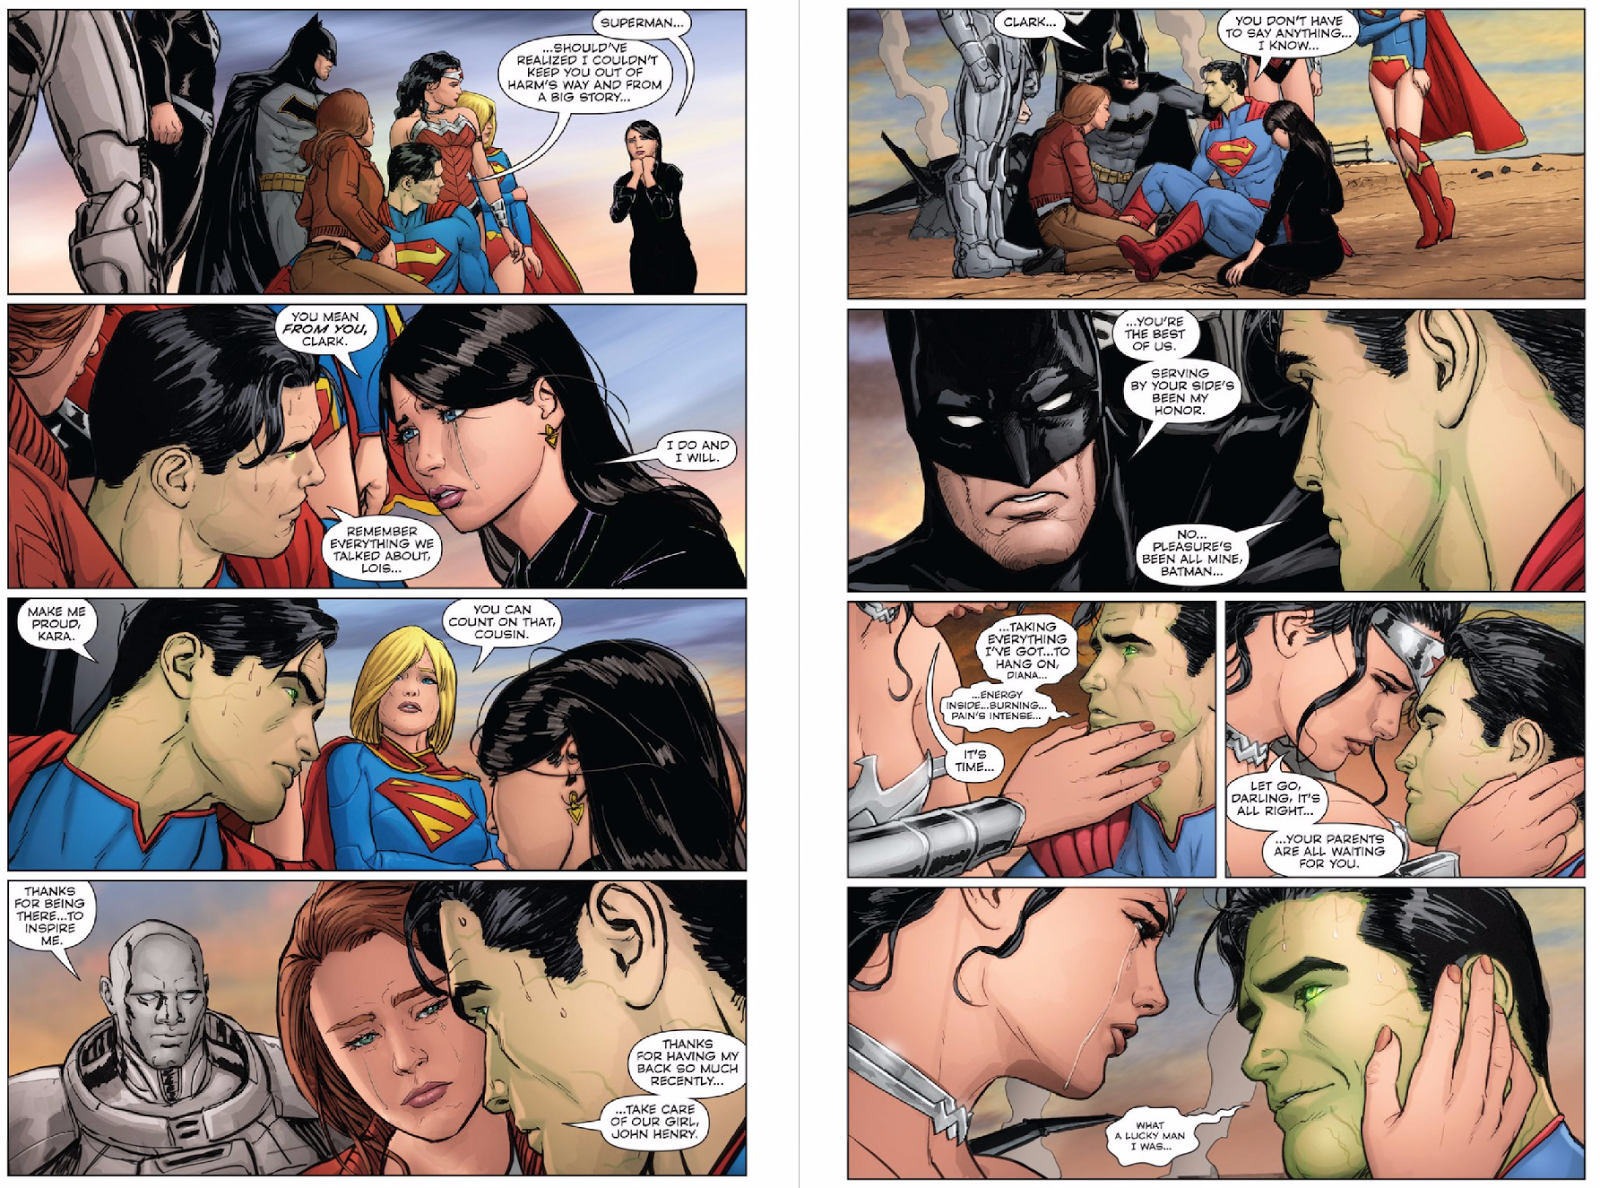 38 - [DC Comics] Superman: Discusión General - Página 10 Mtmc7v8ujjeuu7woe7ue